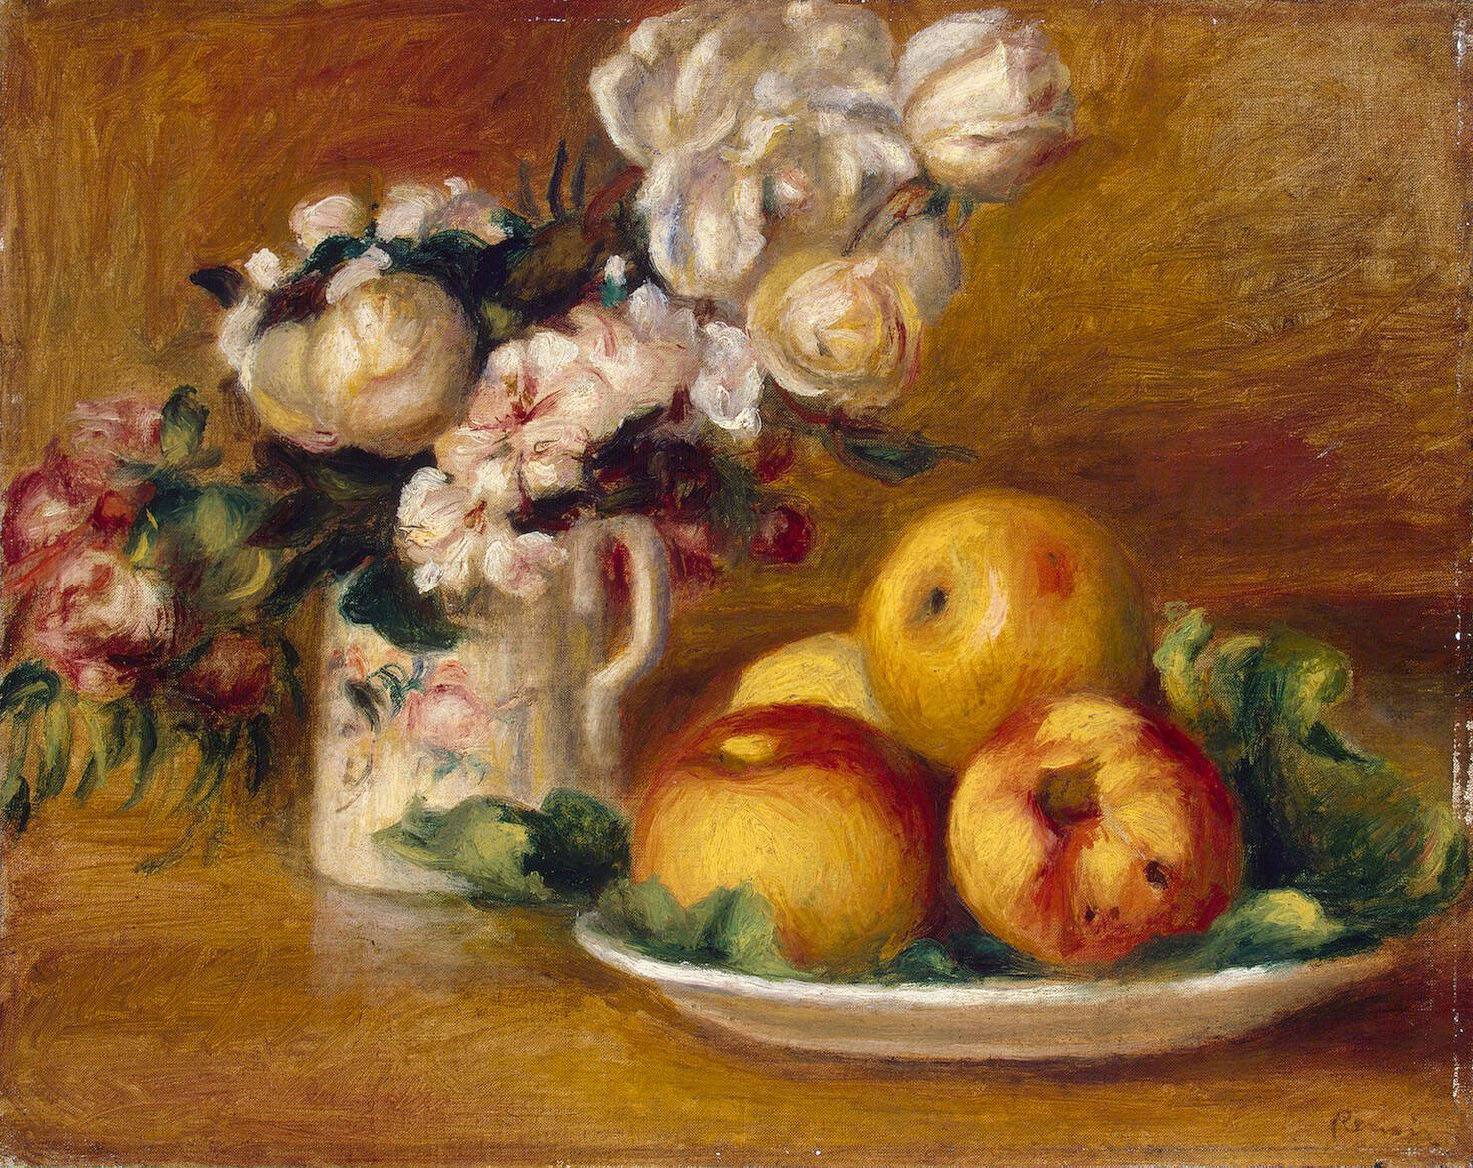 Ренуар. Яблоки и цветы. Около 1895-1896